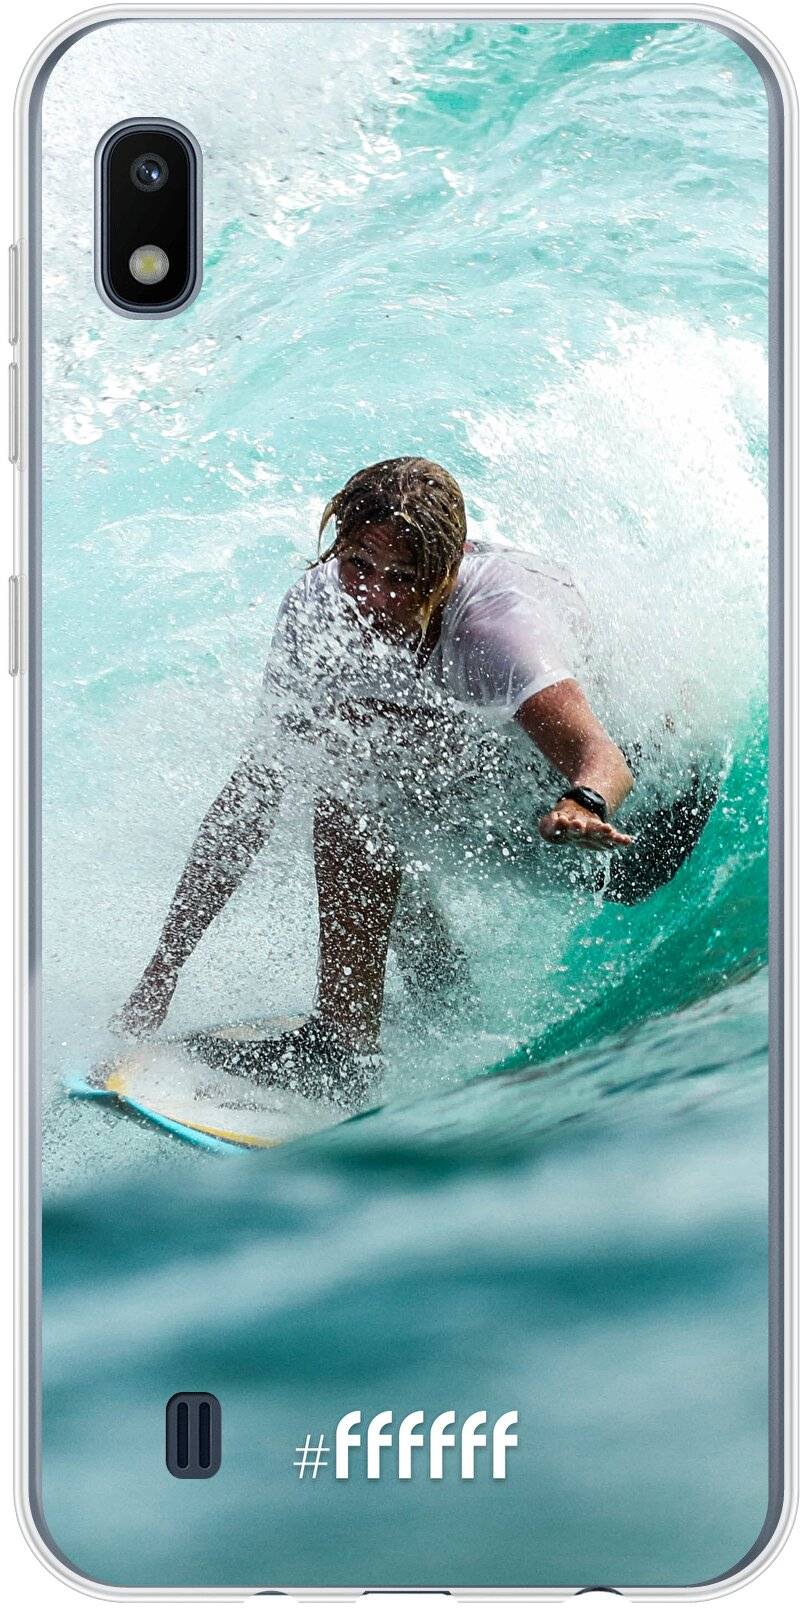 Boy Surfing Galaxy A10